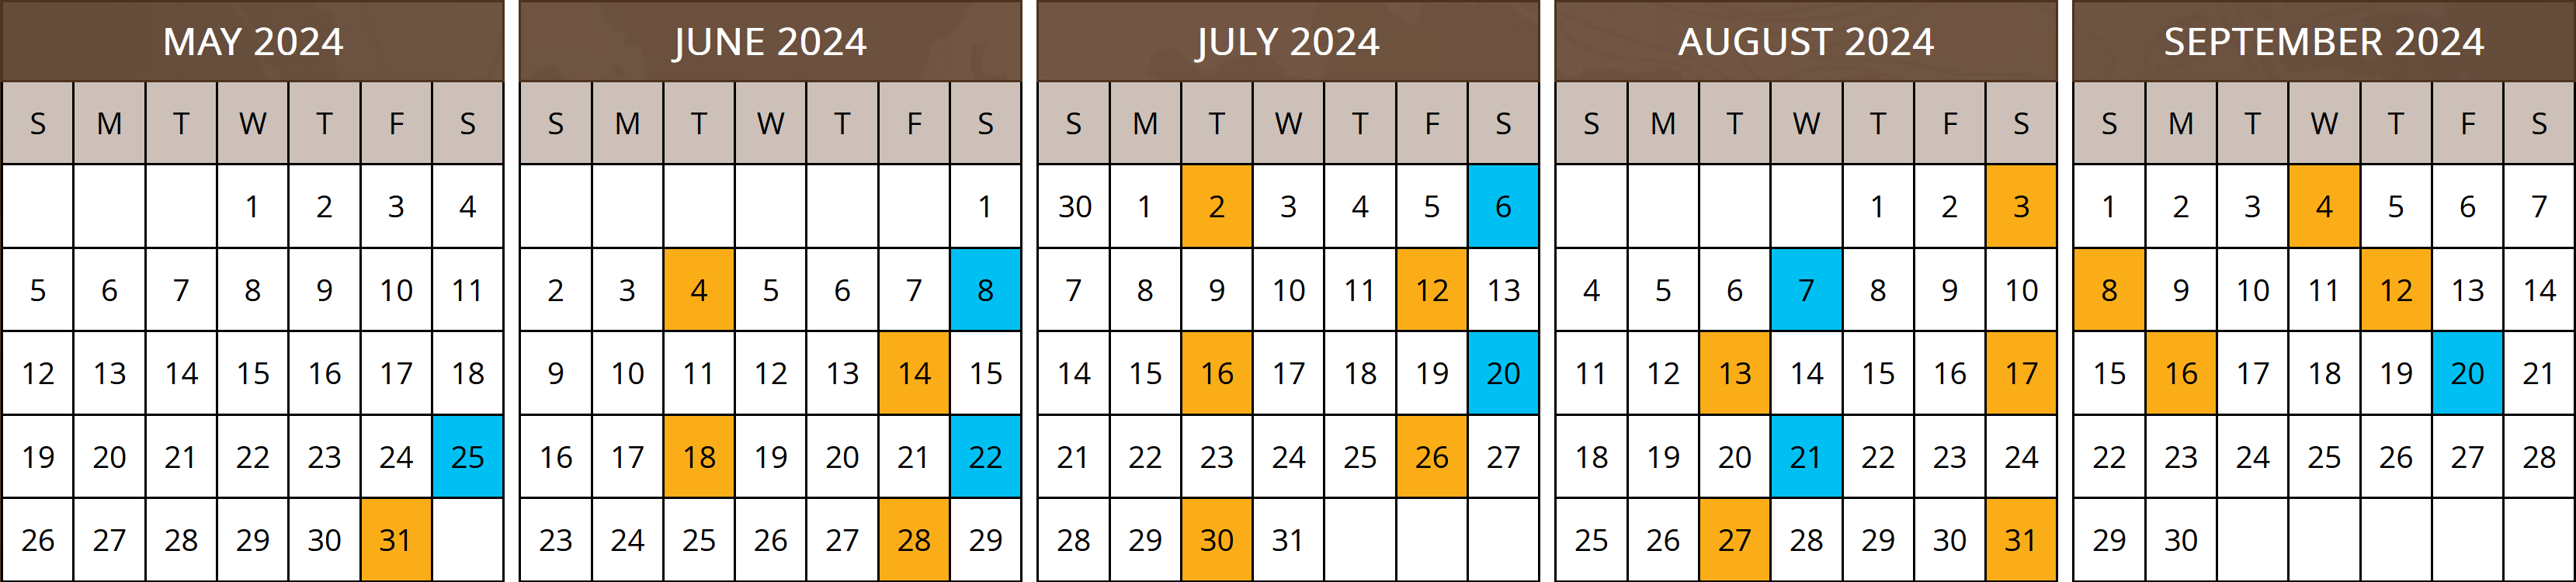 2024 Departure Dates